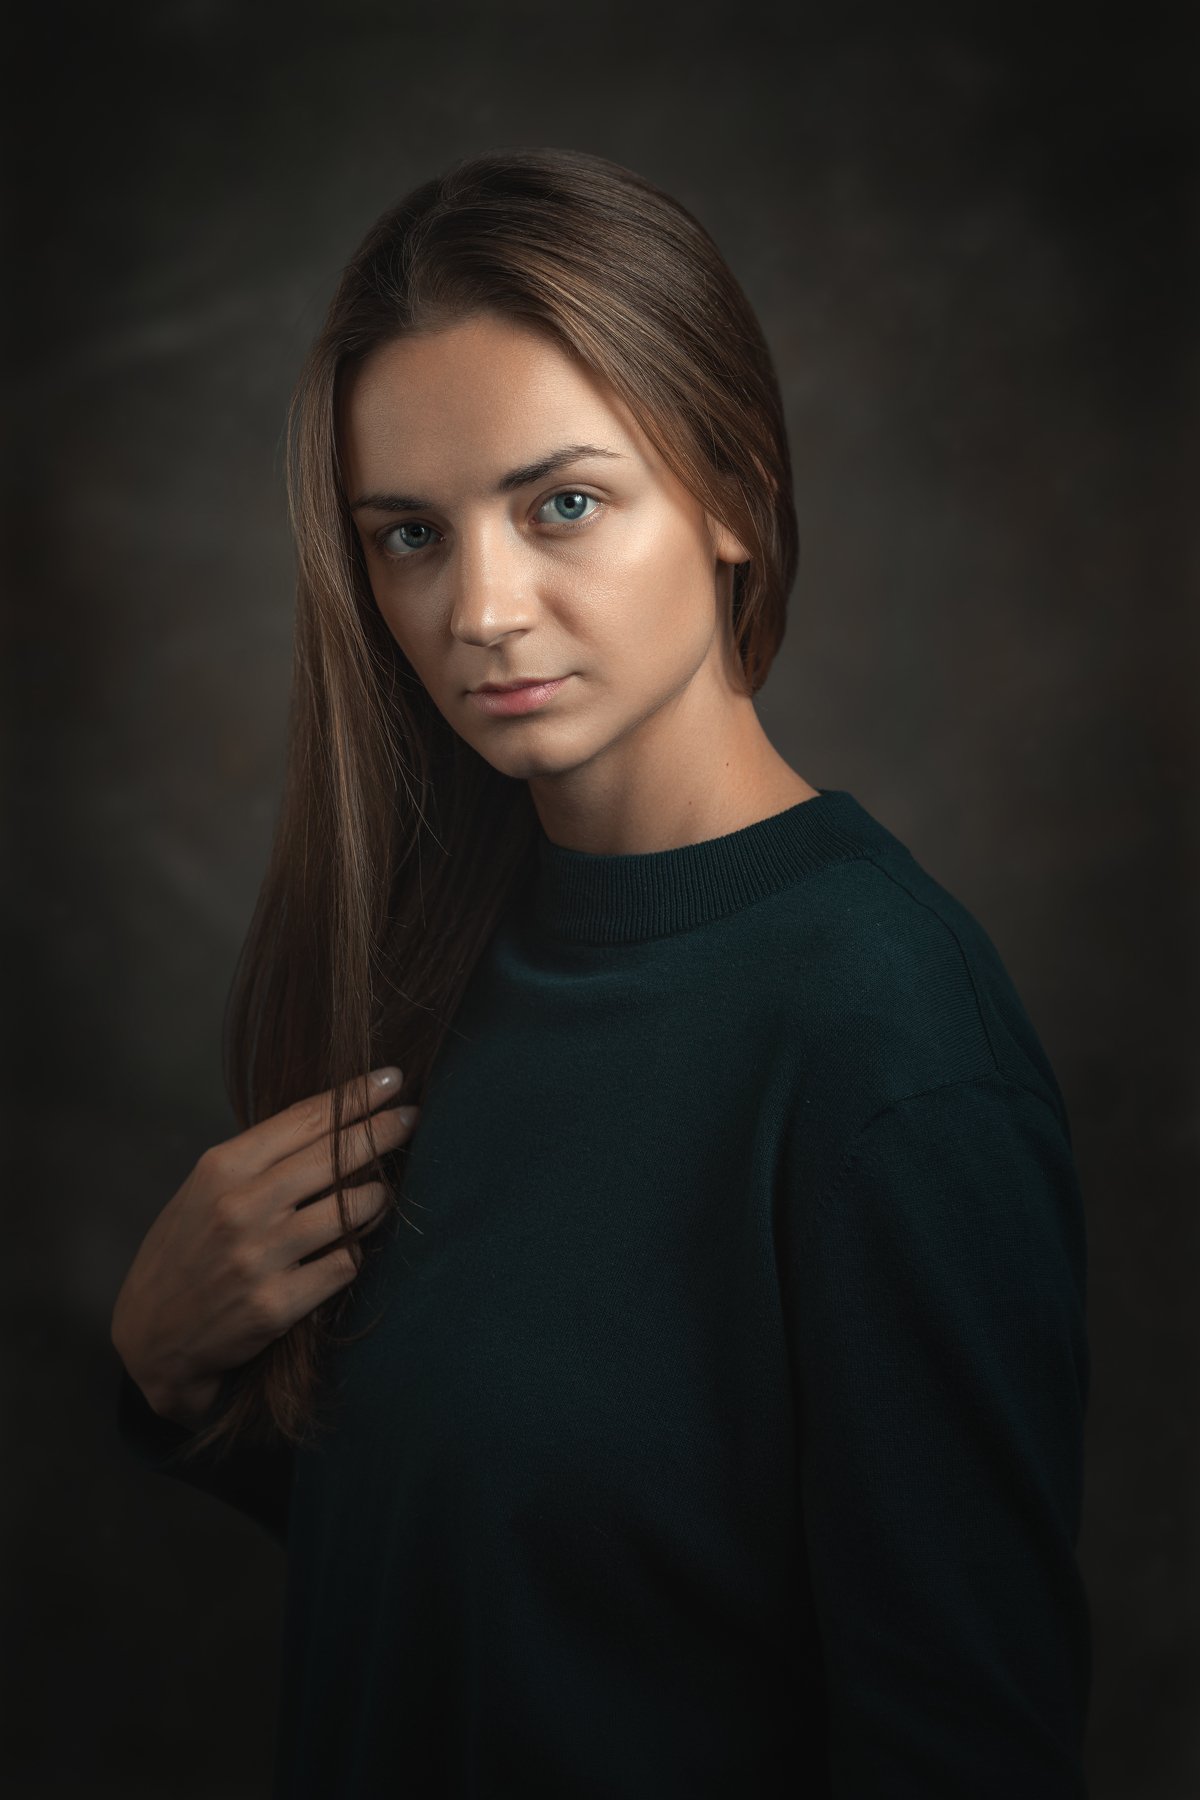 Женский портрет, зеленый джемпер, распущенные волосы, Сергей Анисимов